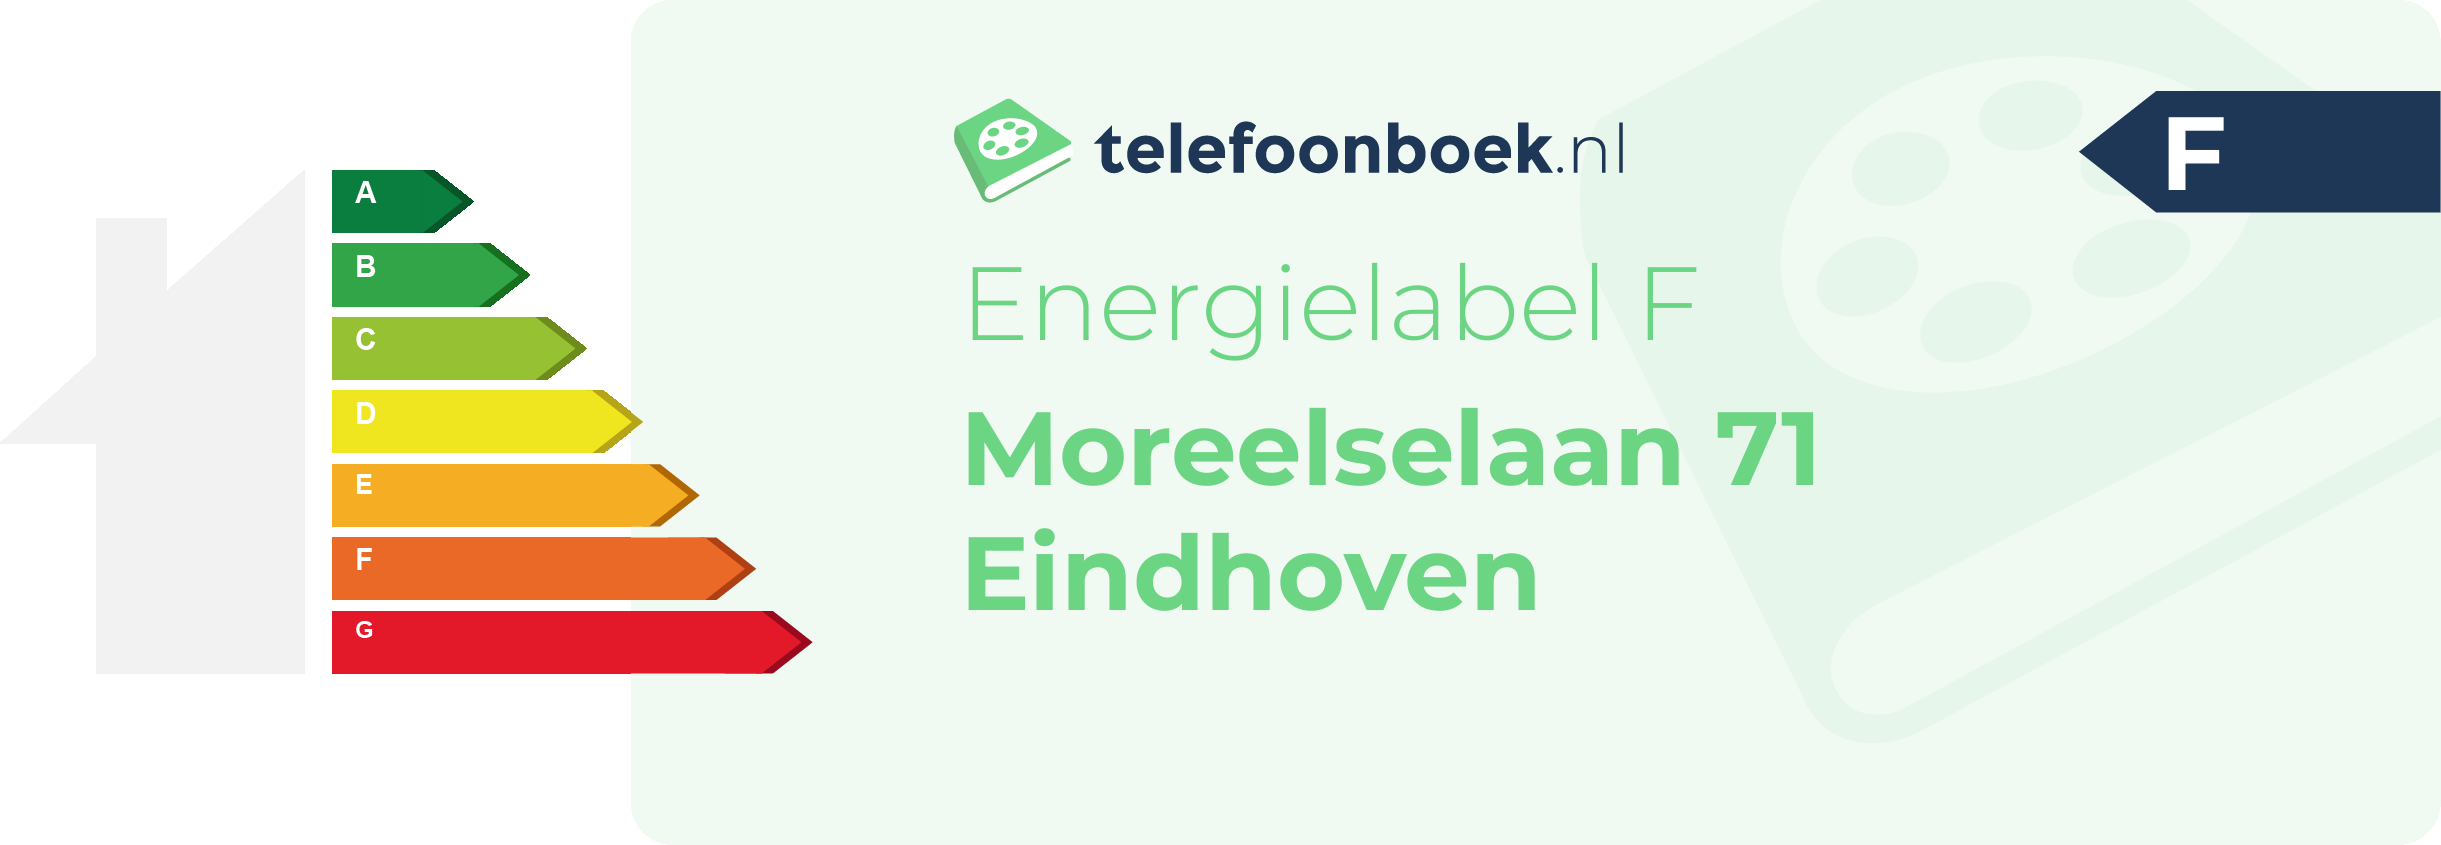 Energielabel Moreelselaan 71 Eindhoven